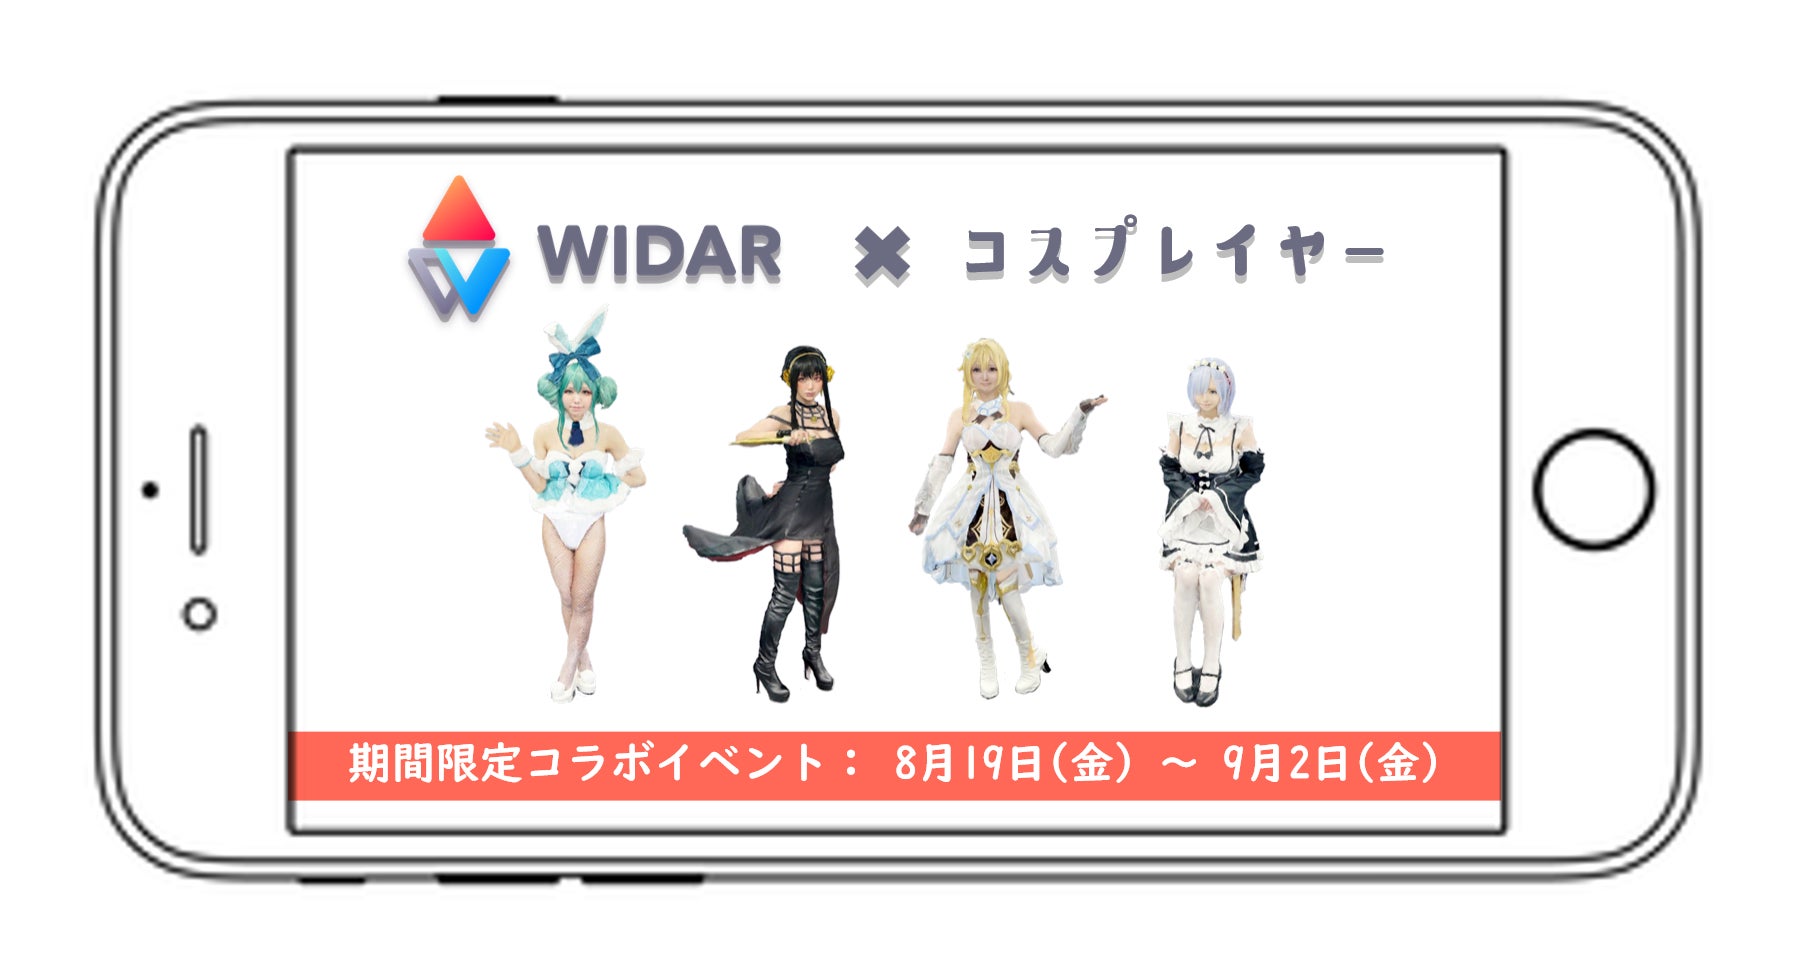 「WIDAR」×「コスプレイヤー」とのコラボが決定！モバイル3Dスキャンプラットフォーム「WIDAR」が初となるコラボイベントを実施